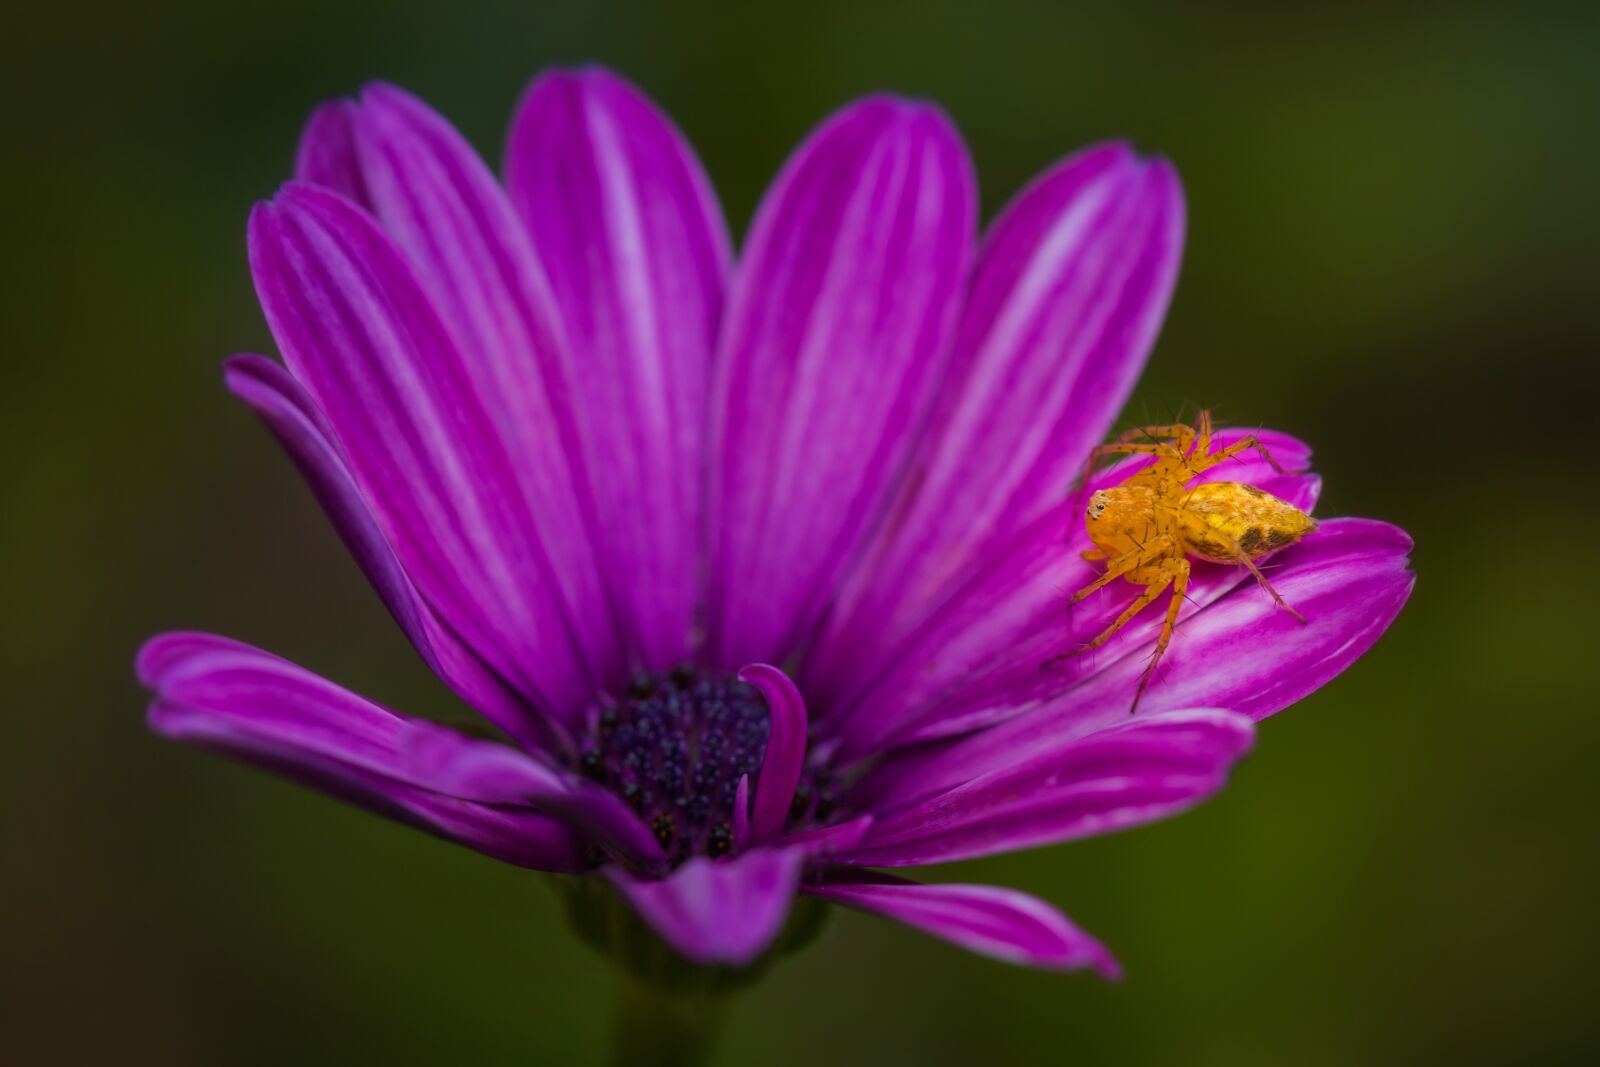 Canon EOS 70D sample photo. Flower, spider, arachnid photography